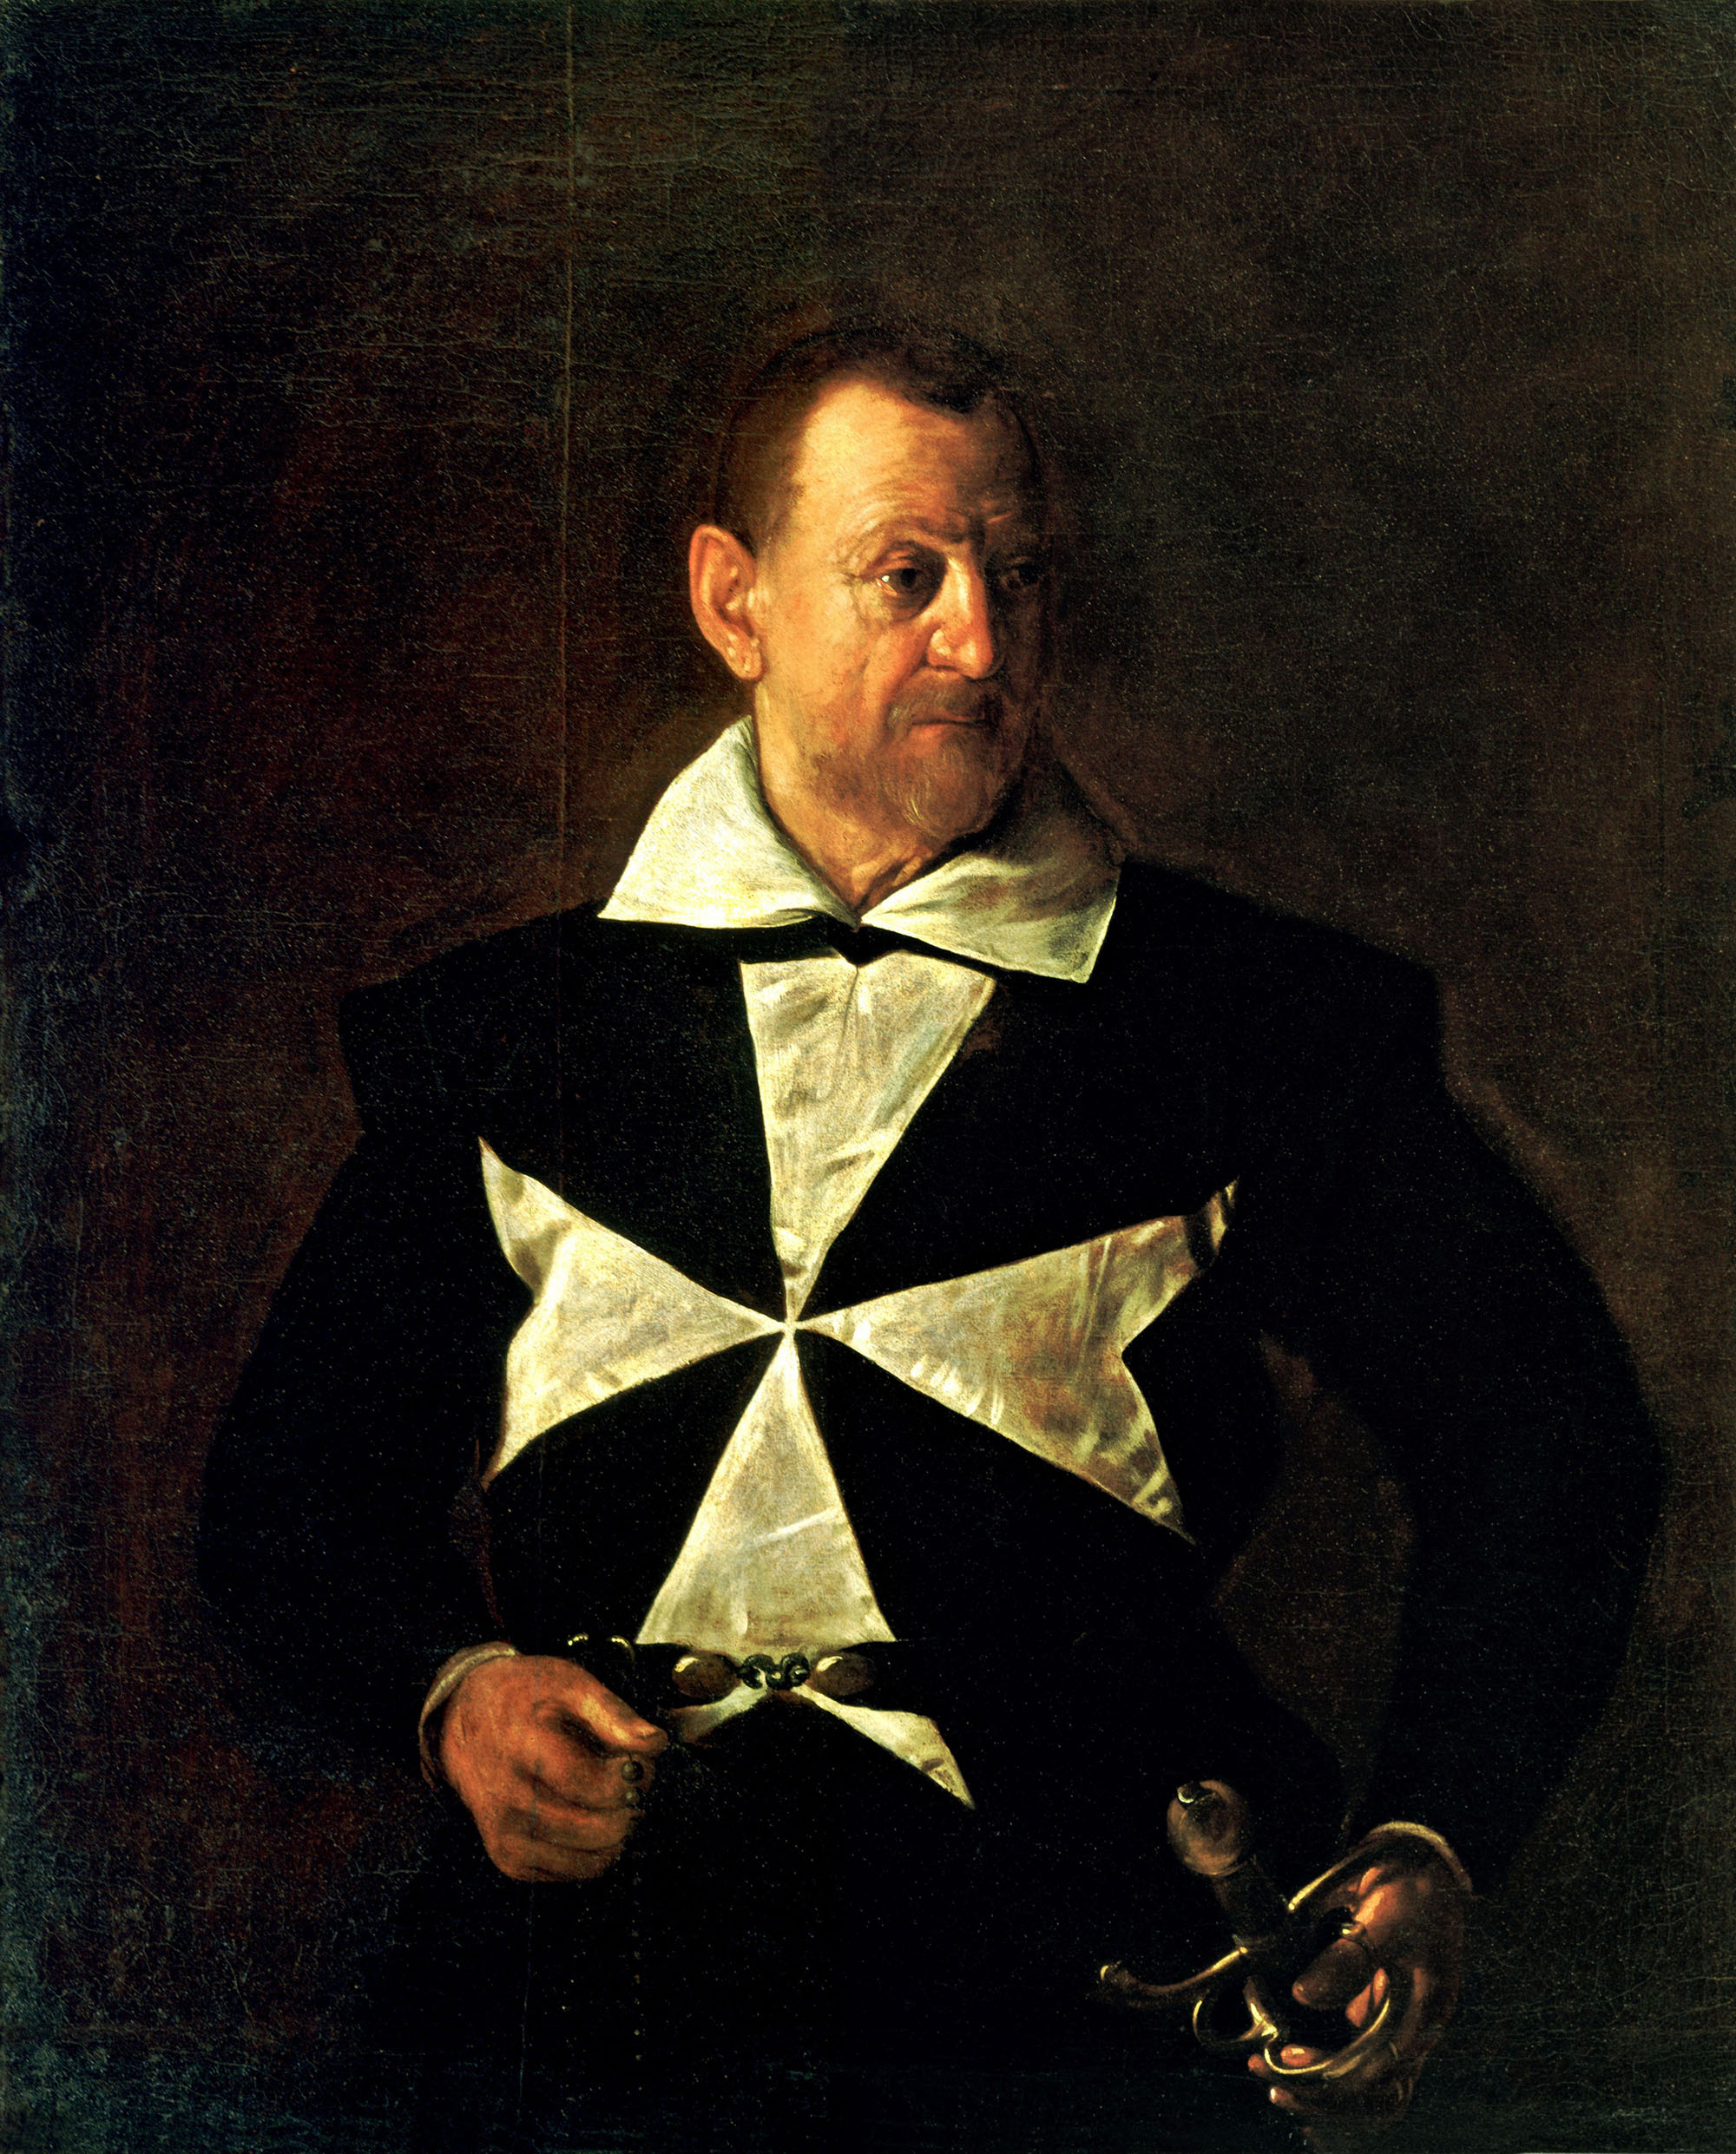 Караваджо. Портрет мальтийского рыцаря (Портрет Фра Антонио Мартелли). 1608.